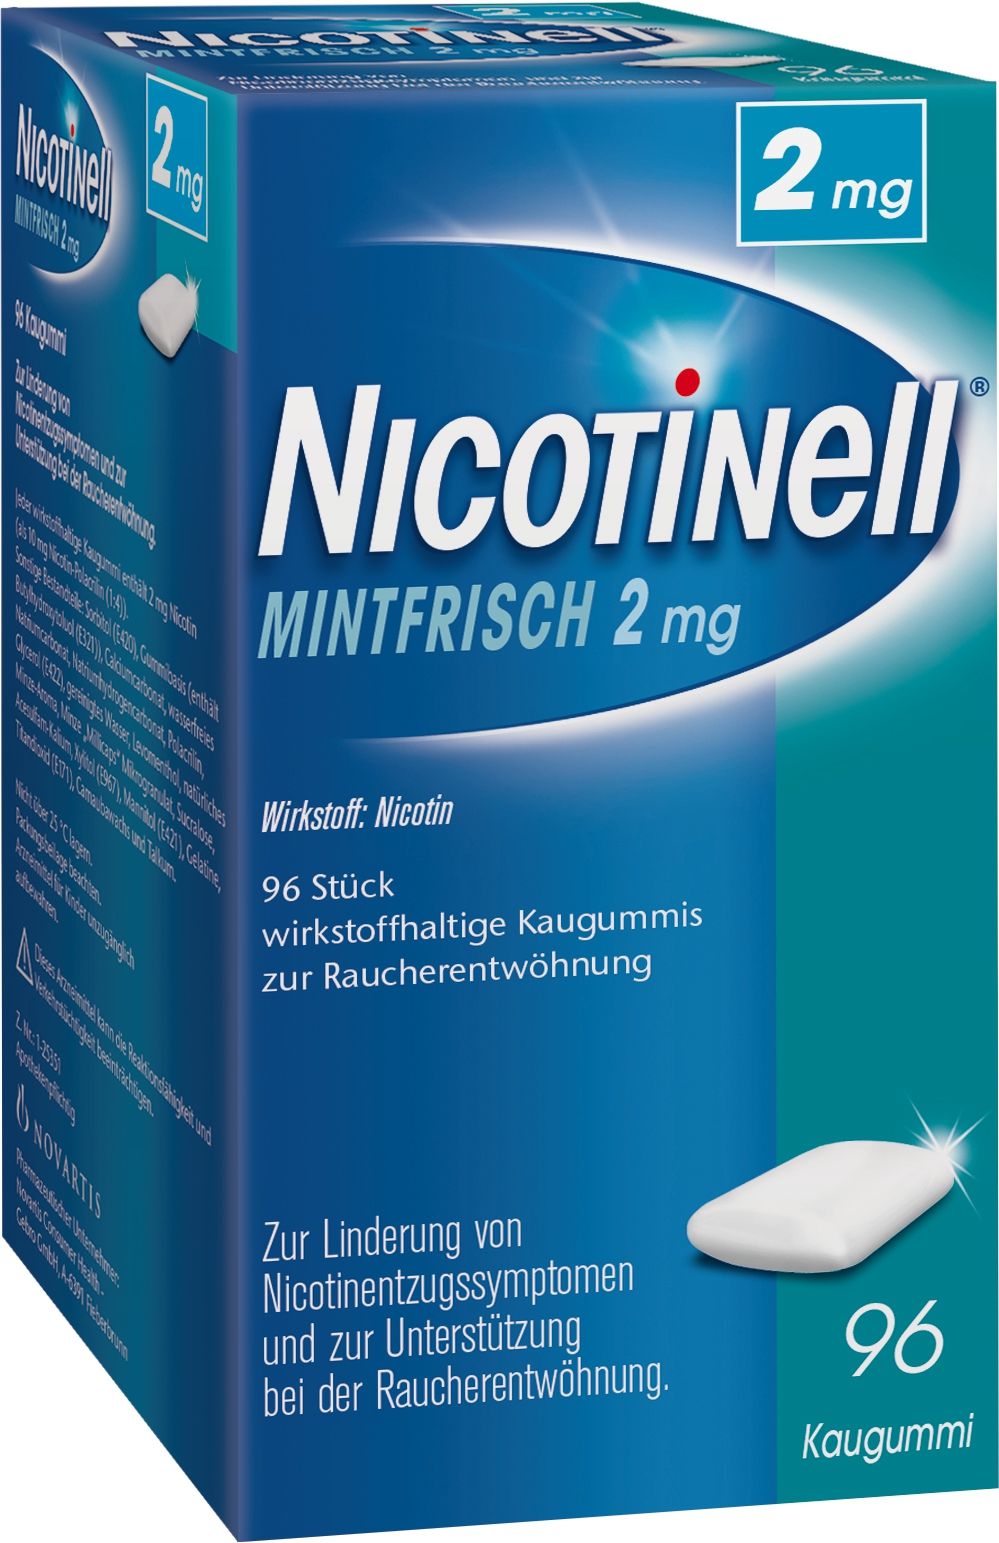 Abbildung Nicotinell MintFrisch 2 mg - wirkstoffhaltige Kaugummis zur Raucherentwöhnung